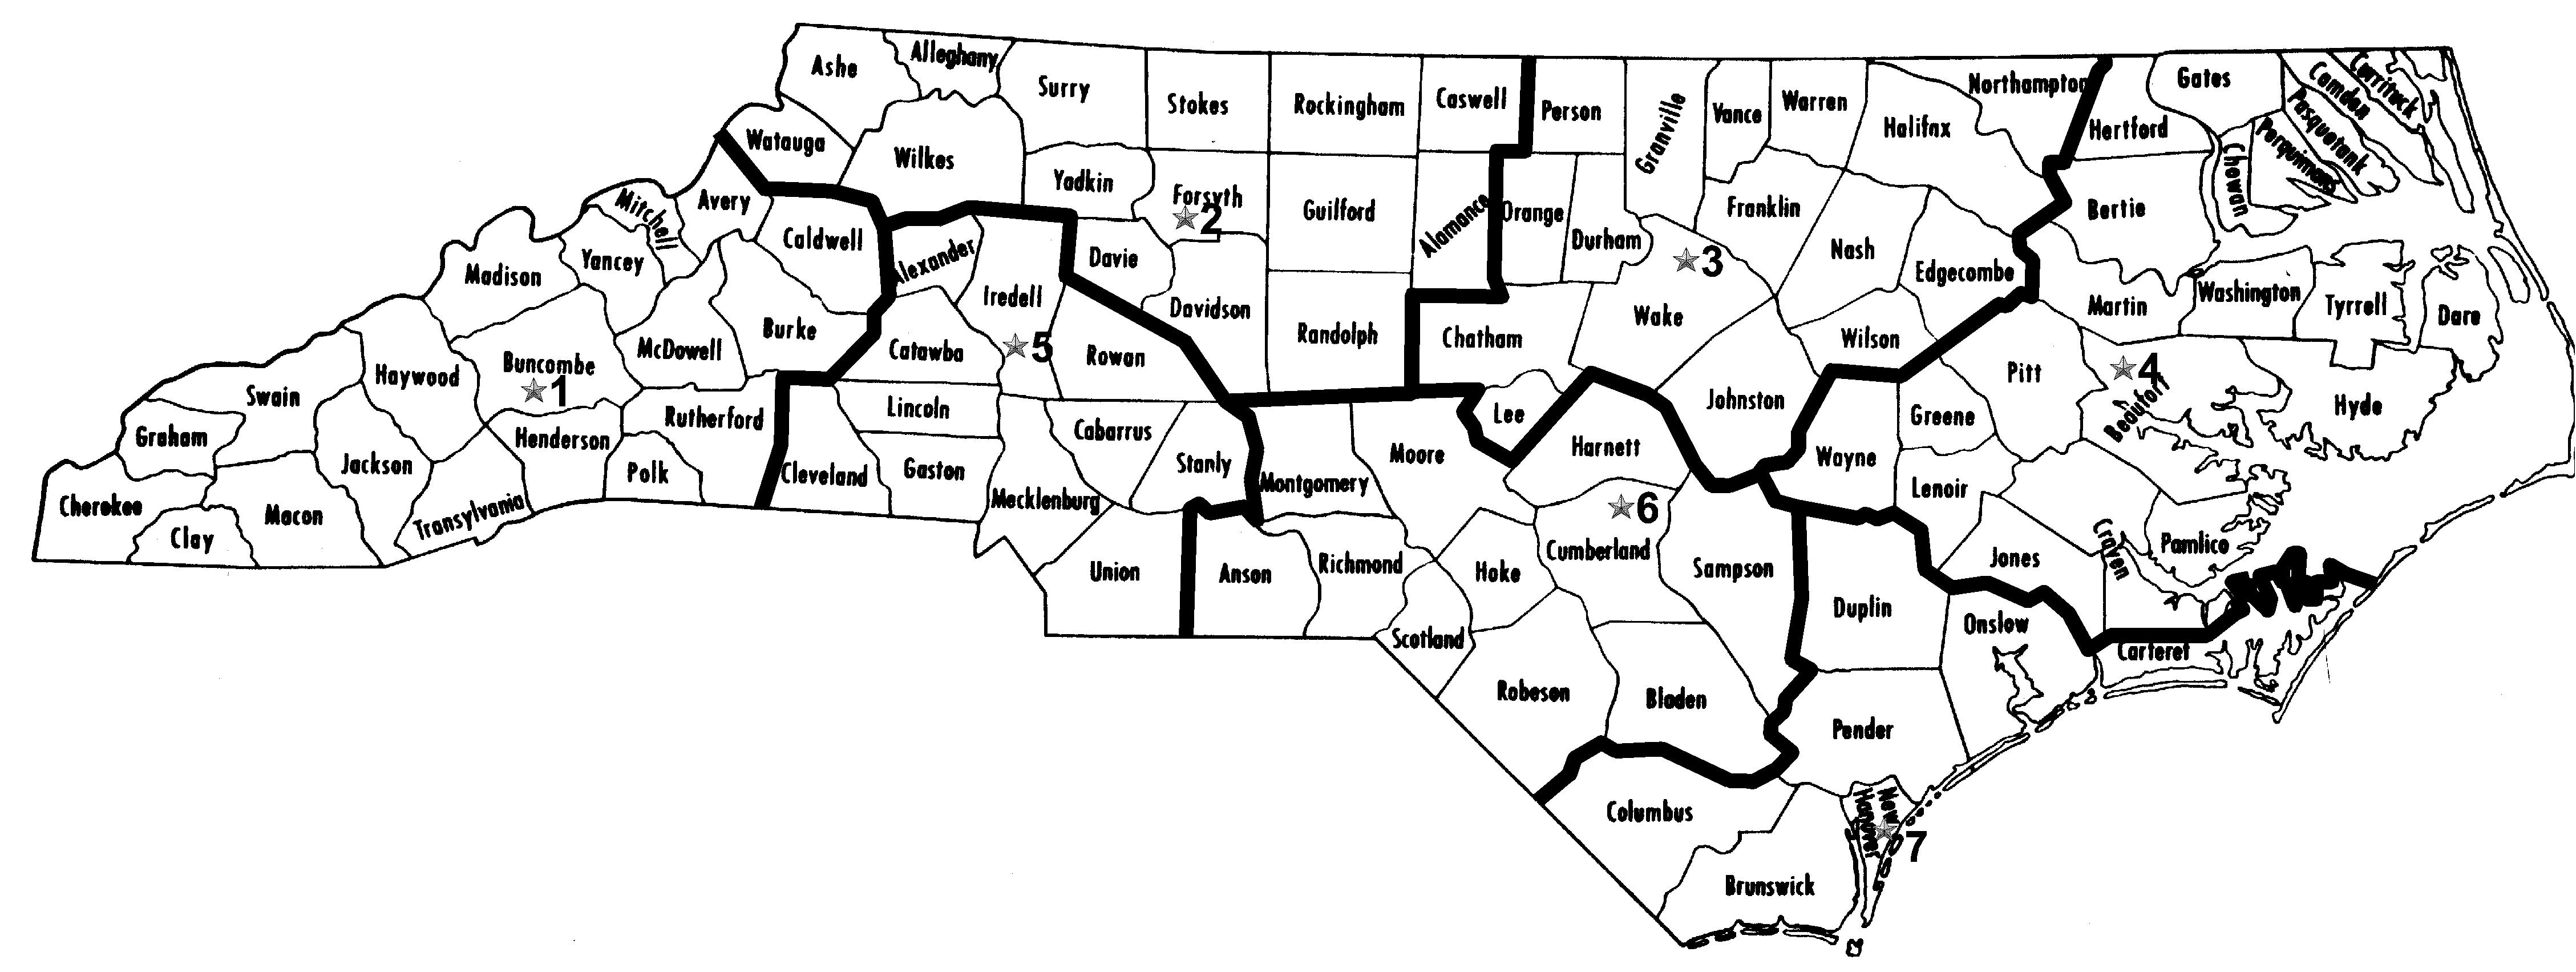 printable-north-carolina-county-map